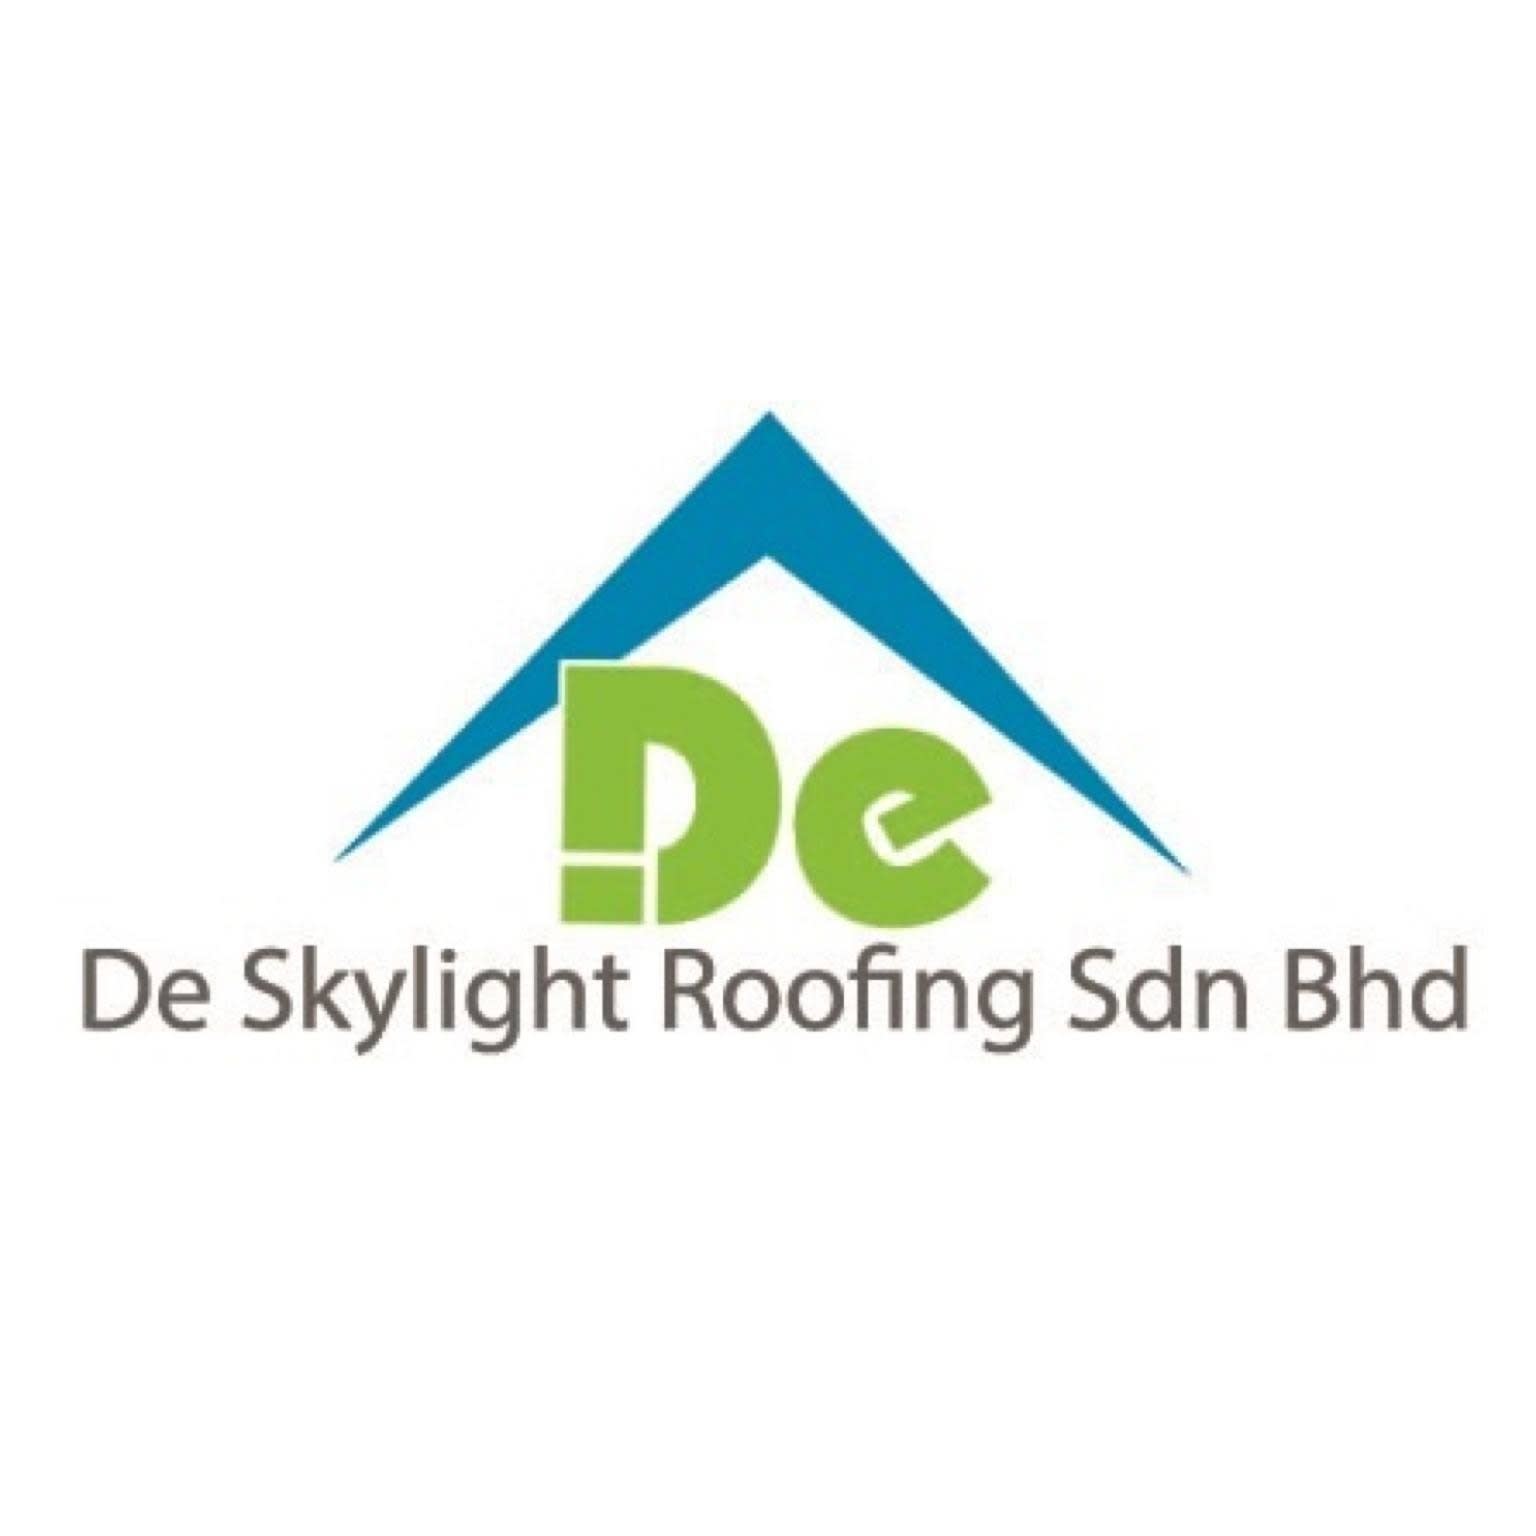 De Skylight Roofing